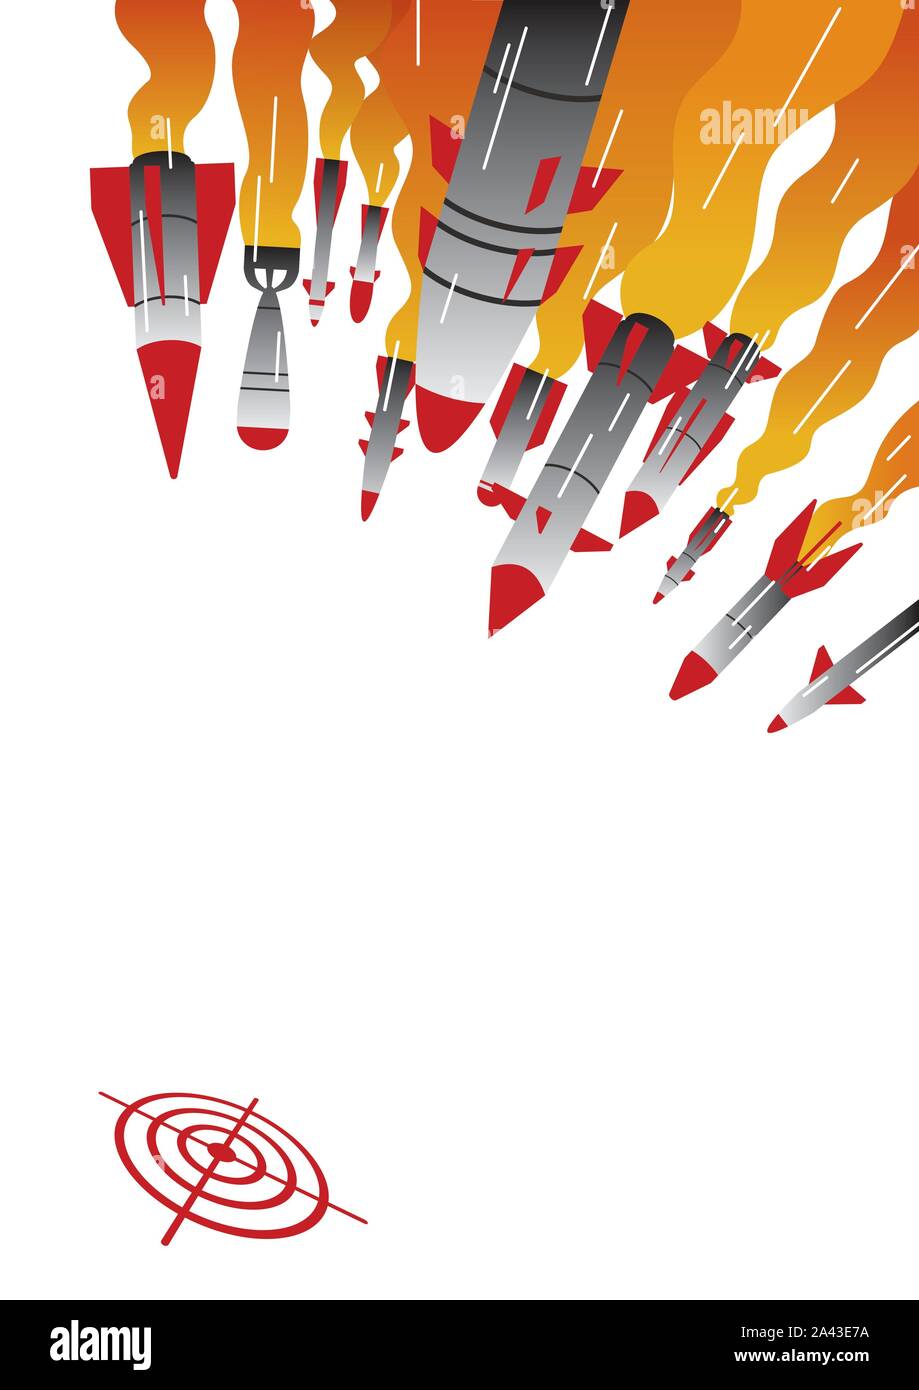 Rocket Attack Illustration Stock Vector